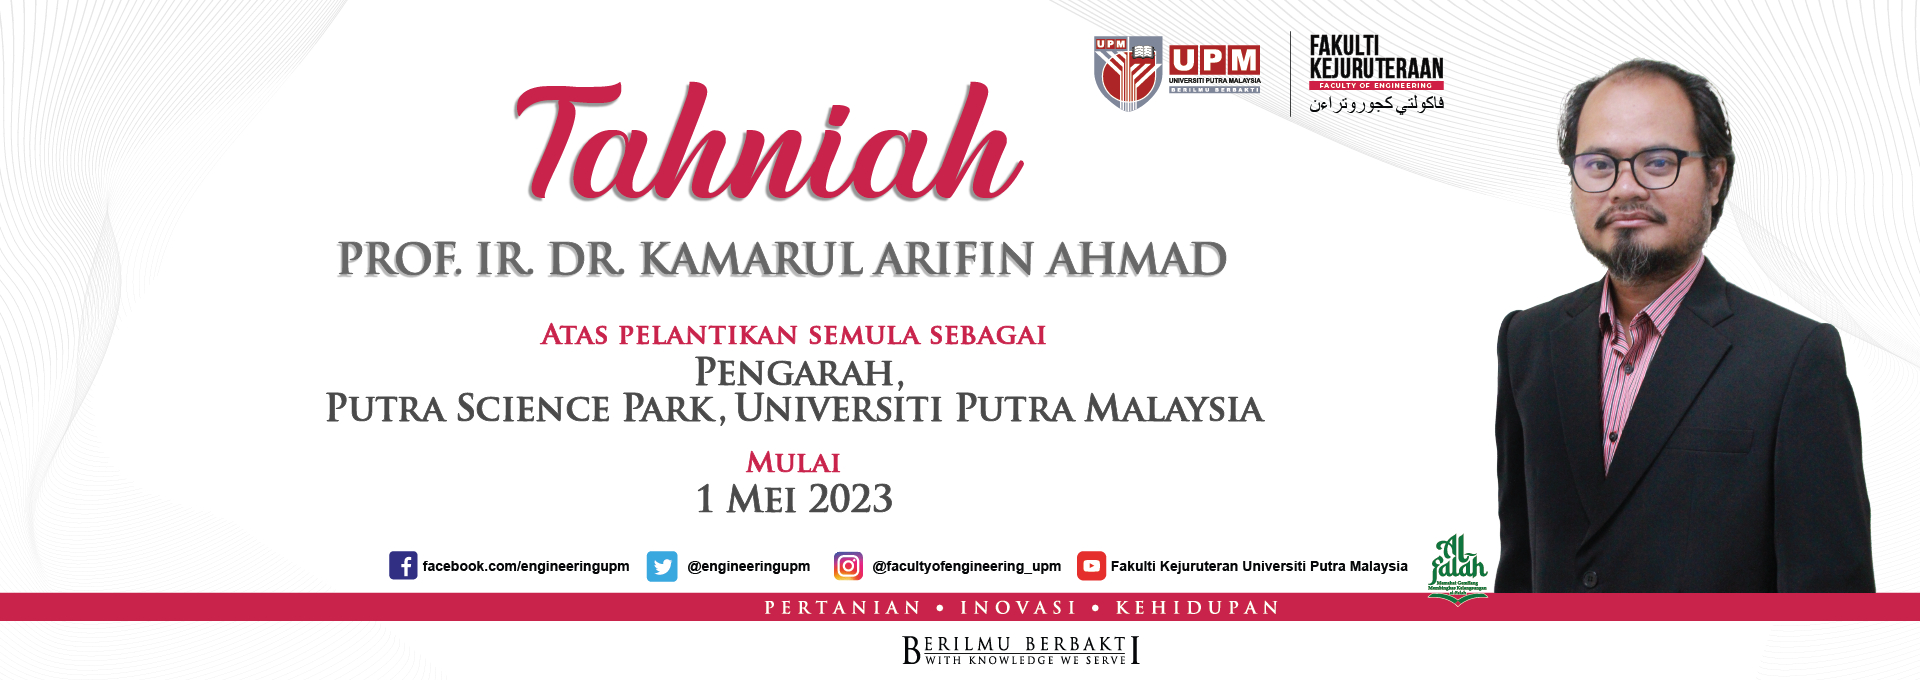 Ybhg. Prof.Ir.Dr.Kamarul Arifin Ahmad